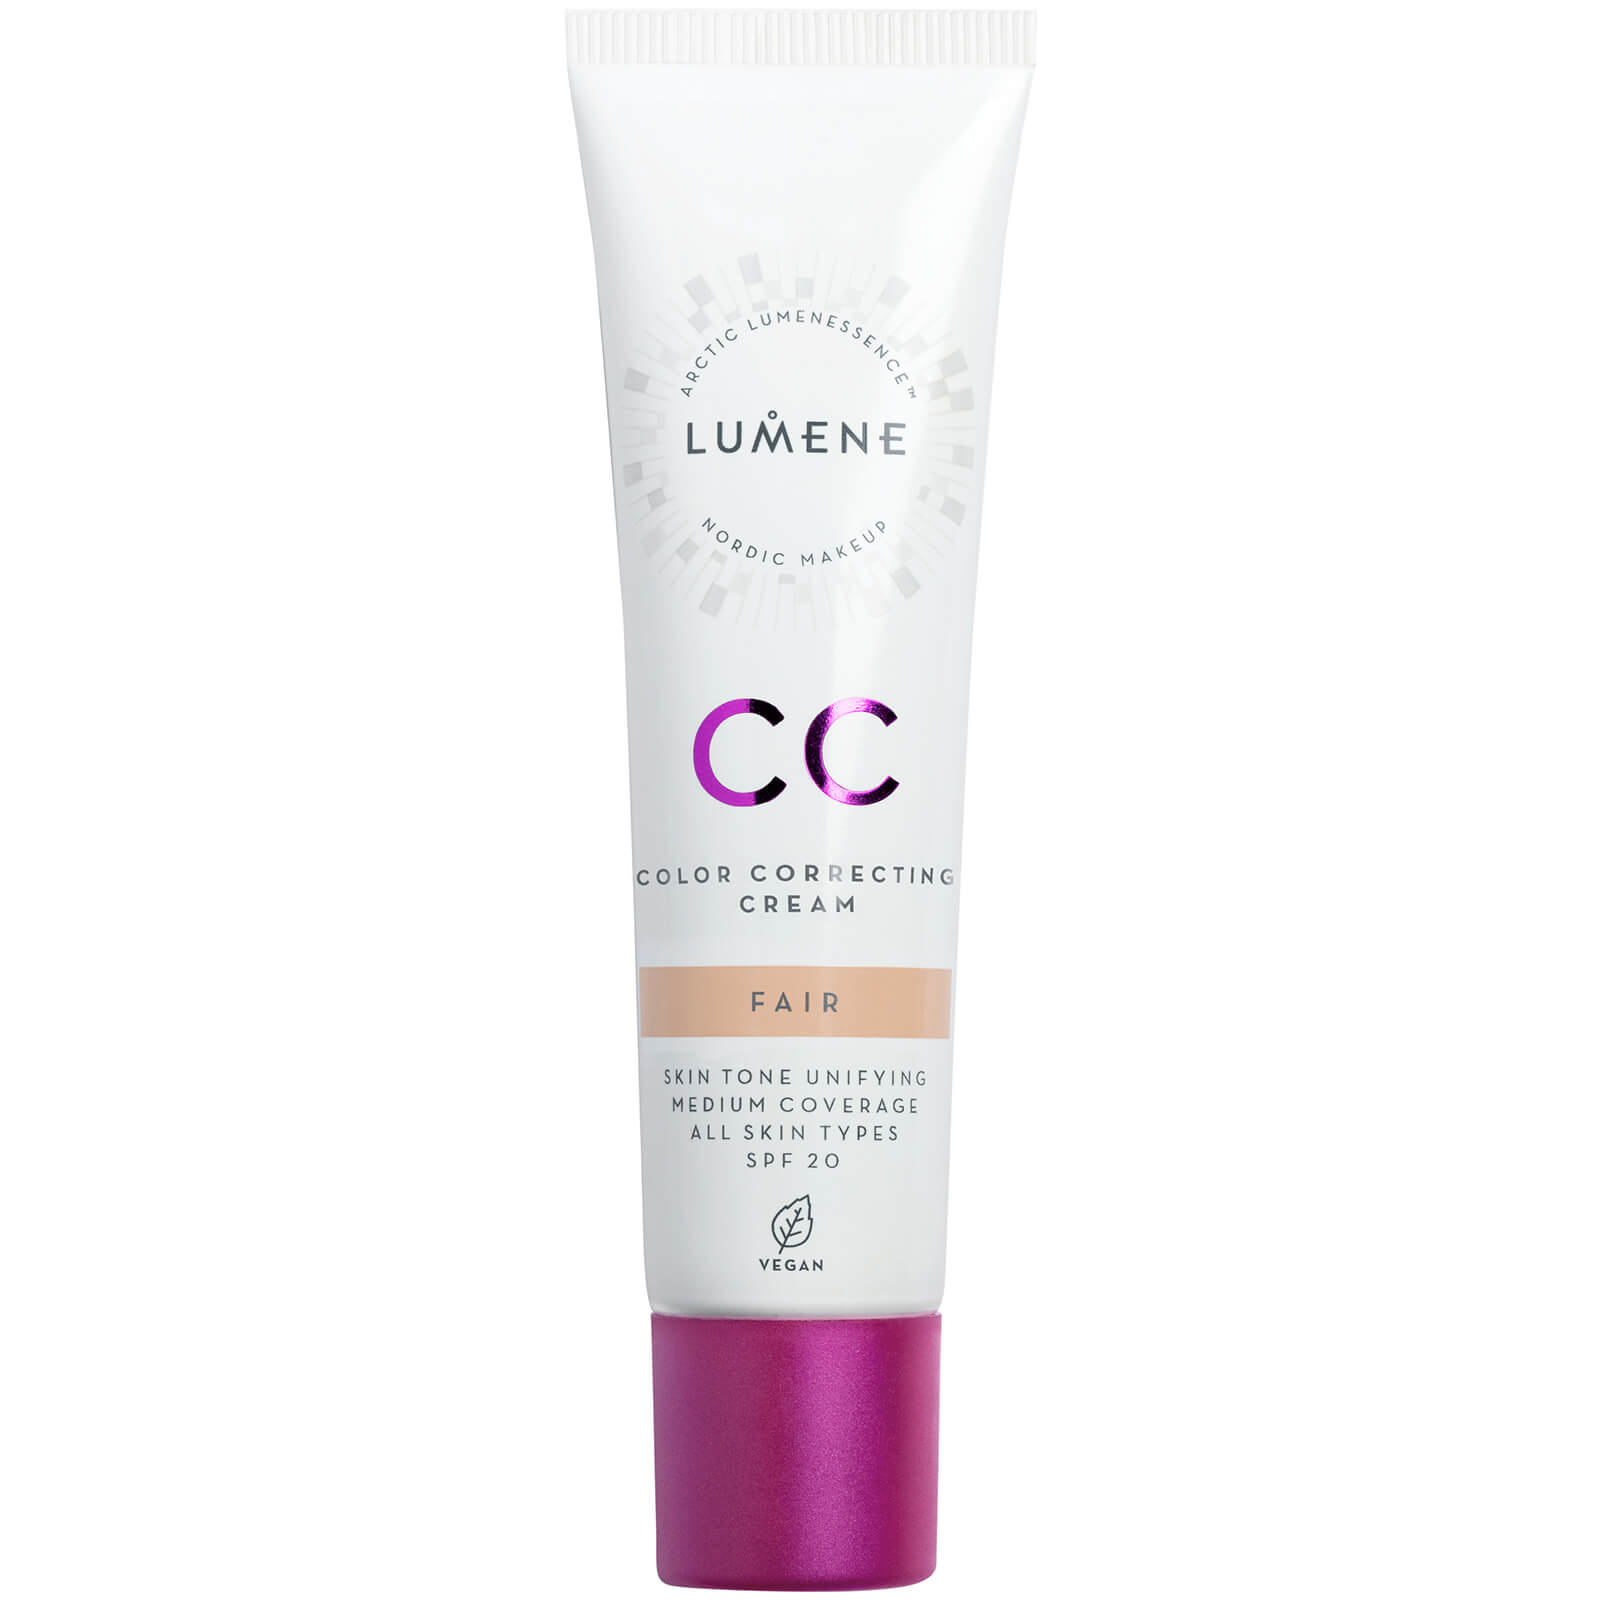 Lumene Cc Colour Correcting Cream Spf20 30ml (various Shades) - Fair